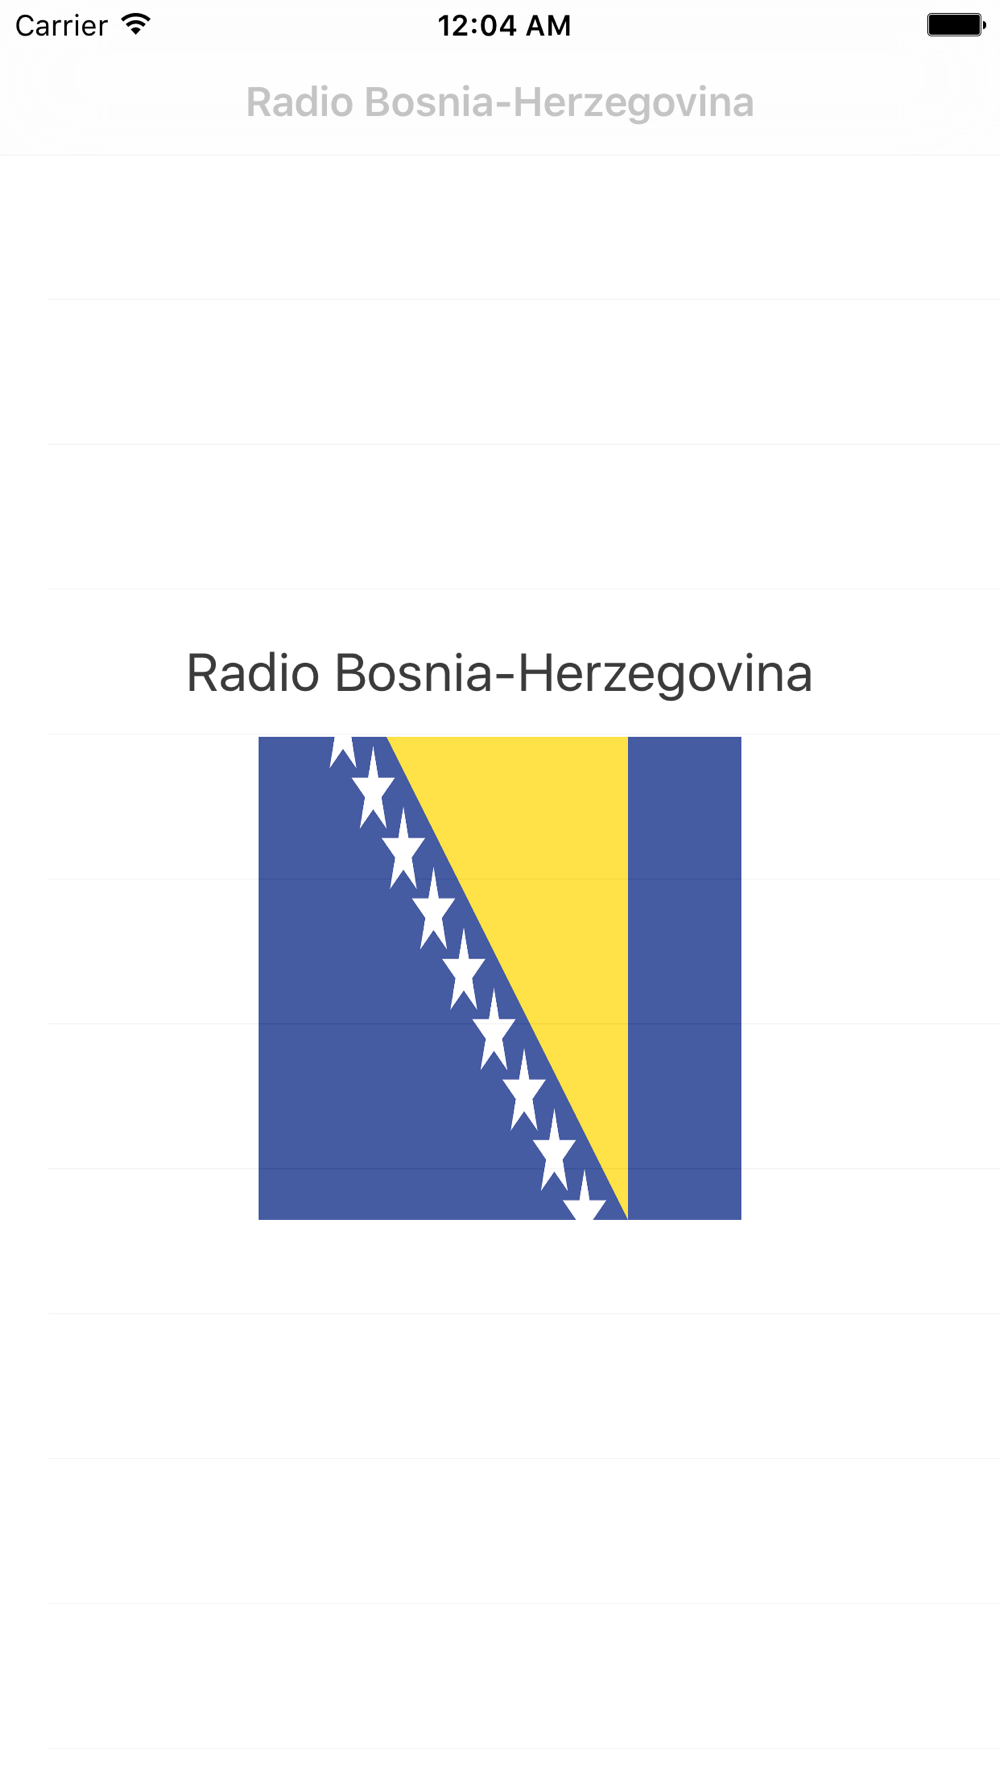 BOSNIA HERZEGOVINA RADIOS Free Download App for iPhone - STEPrimo.com